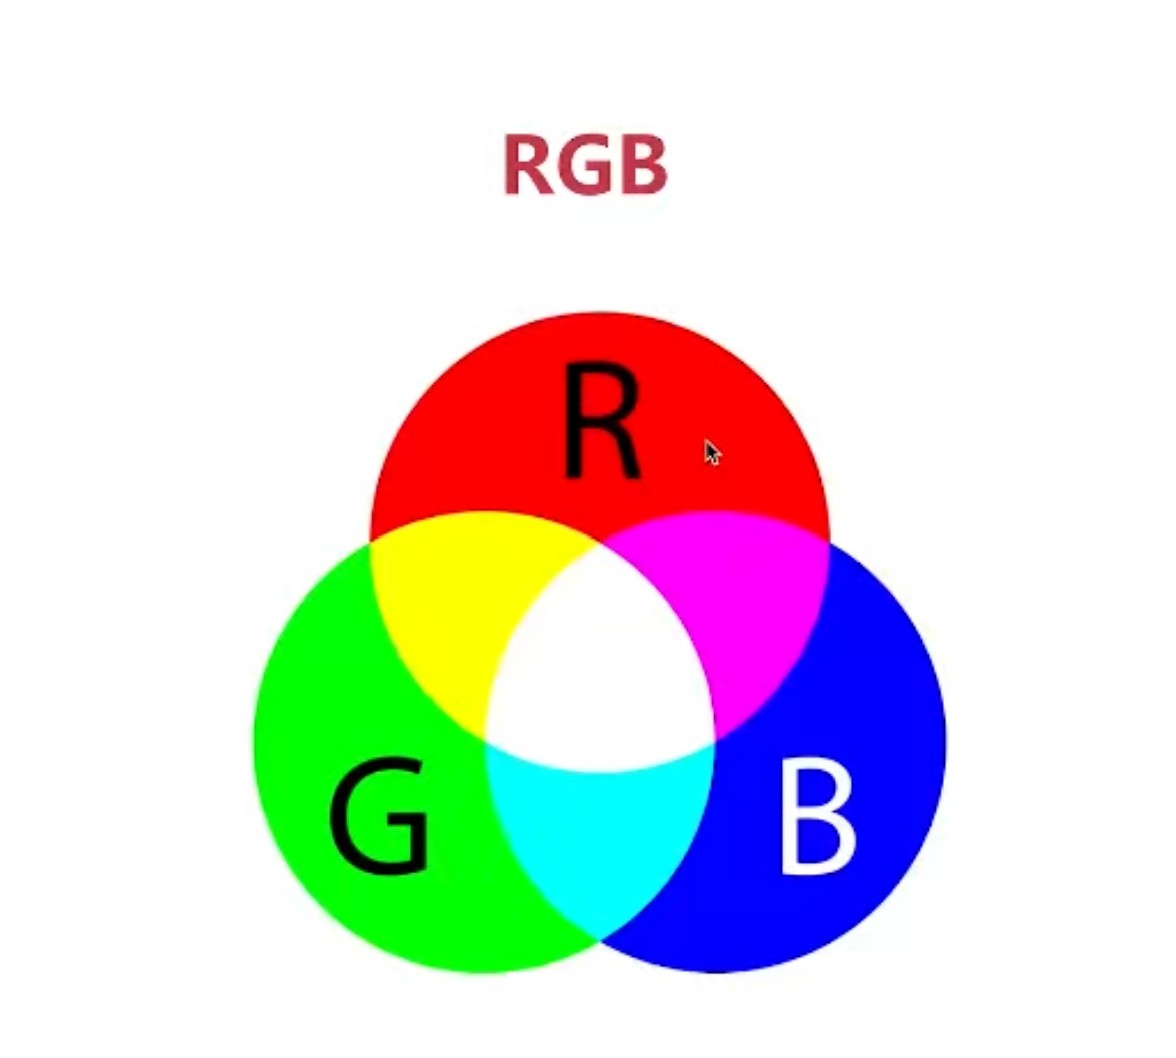 颜色的透明度,全透明,半透明,不透明rgb像素由rgb组成,三原色,red